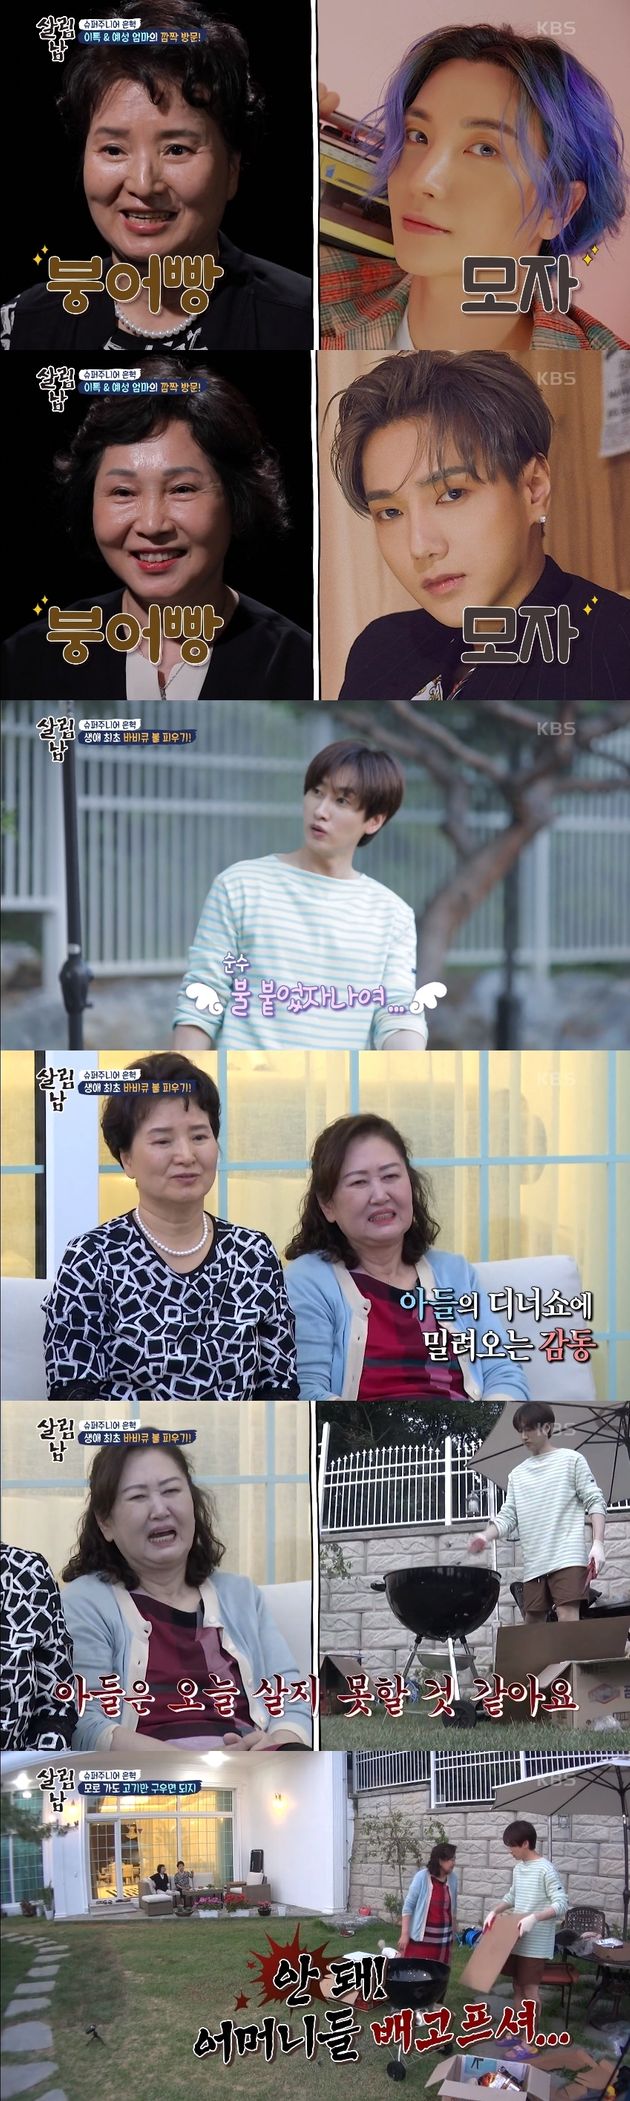 KBS2 ‘살림하는 남자들 시즌2’